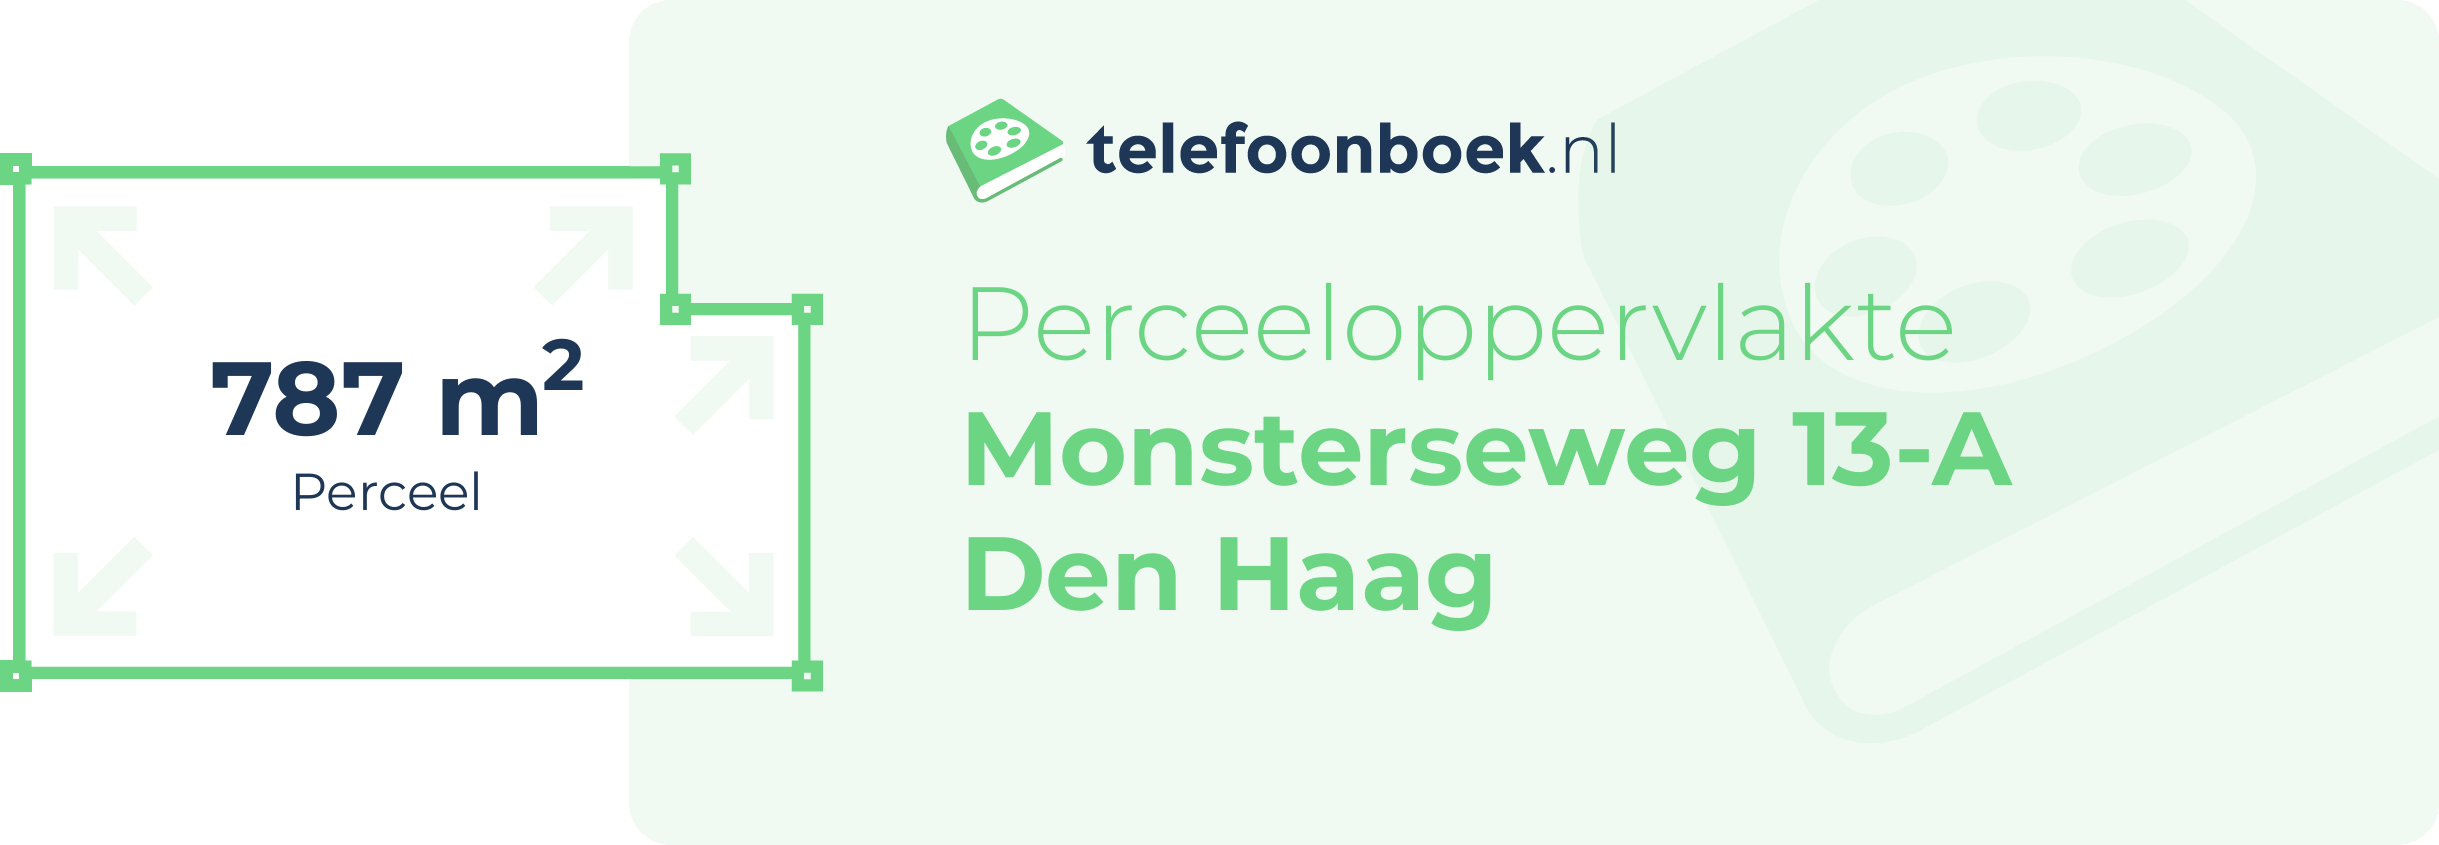 Perceeloppervlakte Monsterseweg 13-A Den Haag